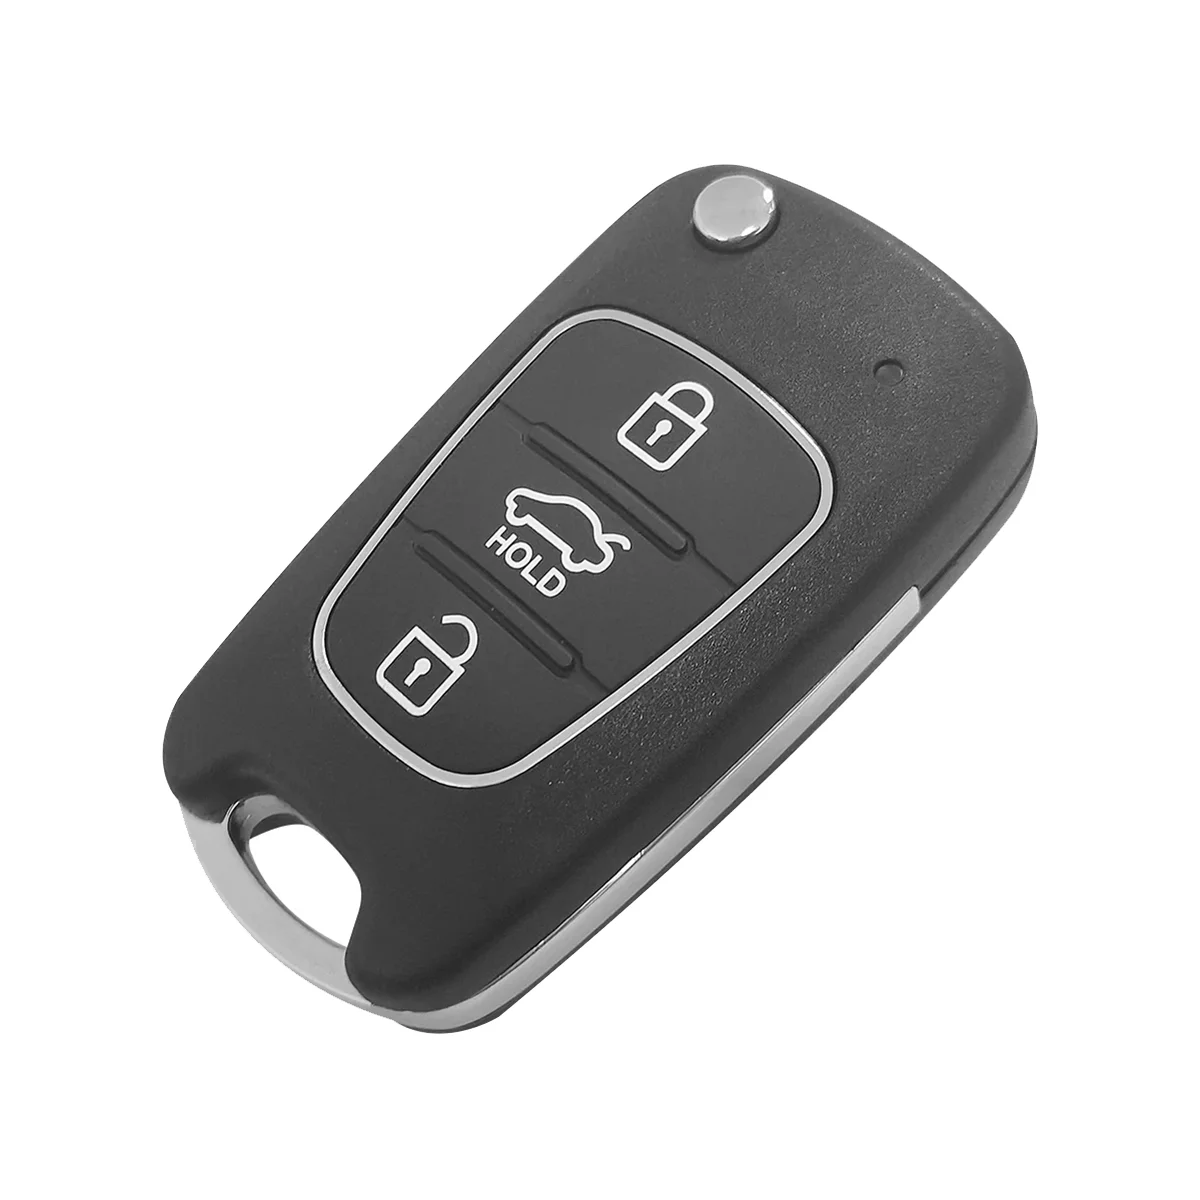 

KEYDIY B04 KD пульт дистанционного управления автомобильный ключ универсальный 3 кнопки для Hyundai Kia стиль для KD900/KD-X2 KD MINI/ URG200 программатор